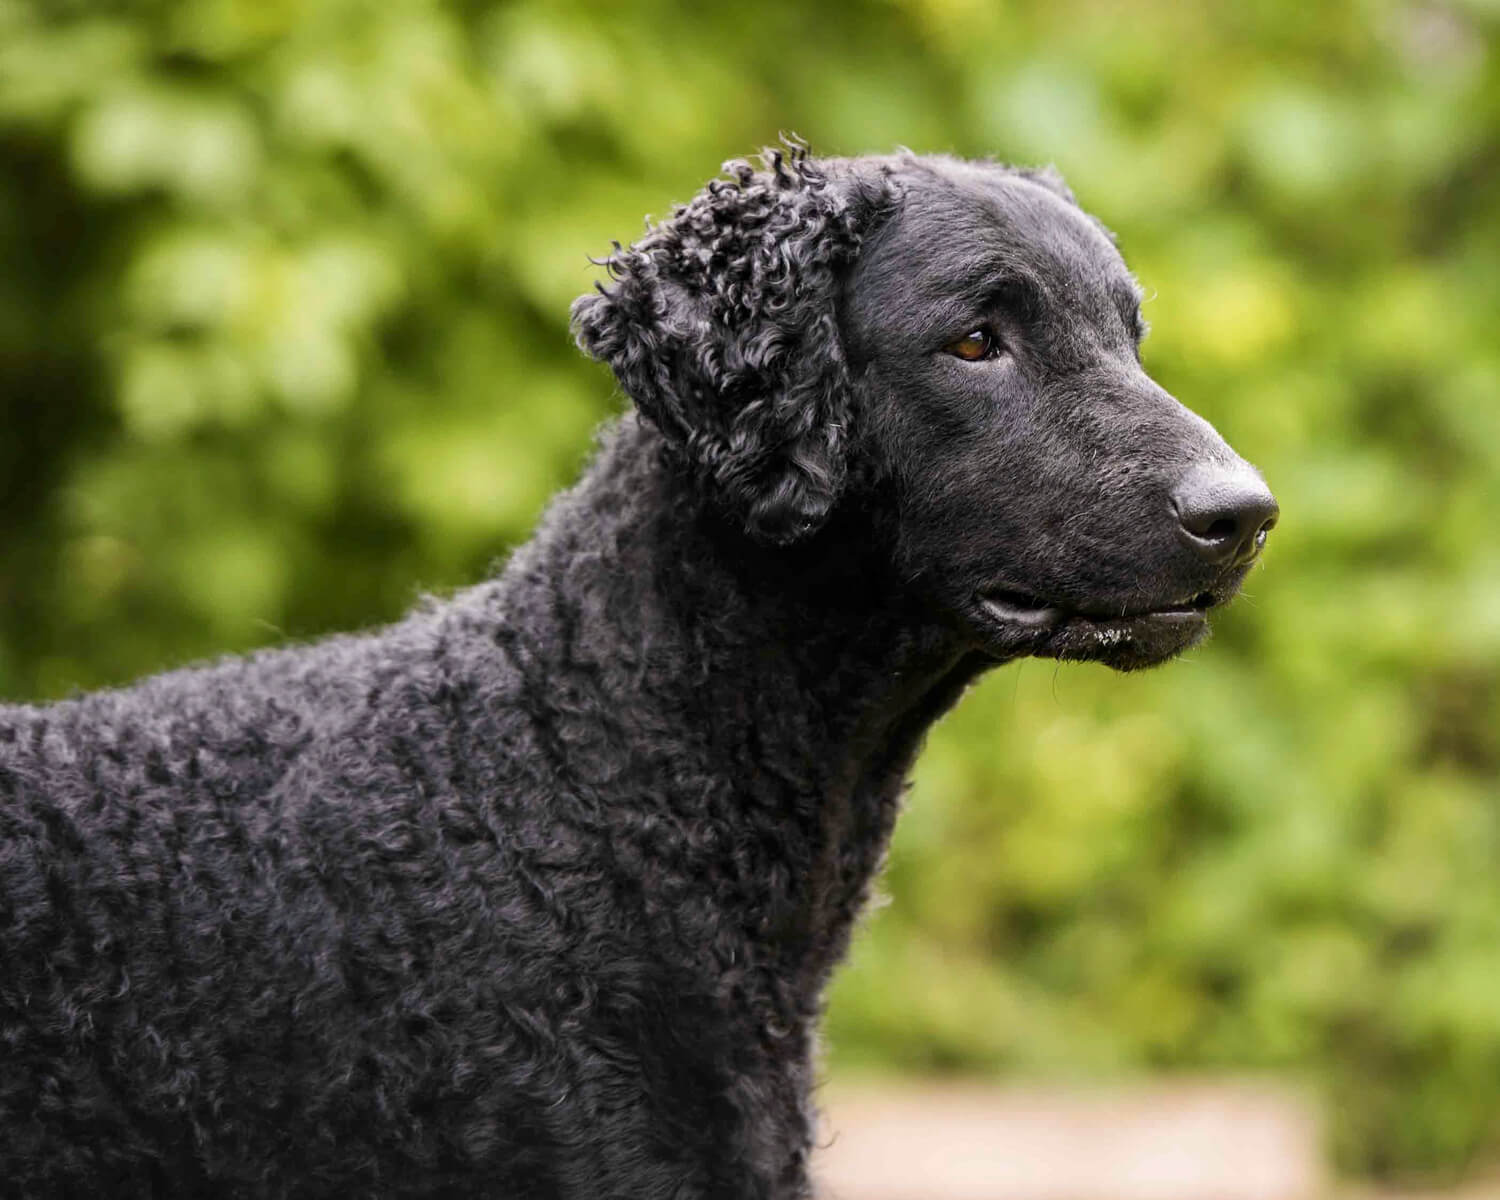 Курчавошерстный ретривер (Curly-Coated Retriever) - это умная,  самостоятельная и активная порода собак. Описание, фото и отзывы.